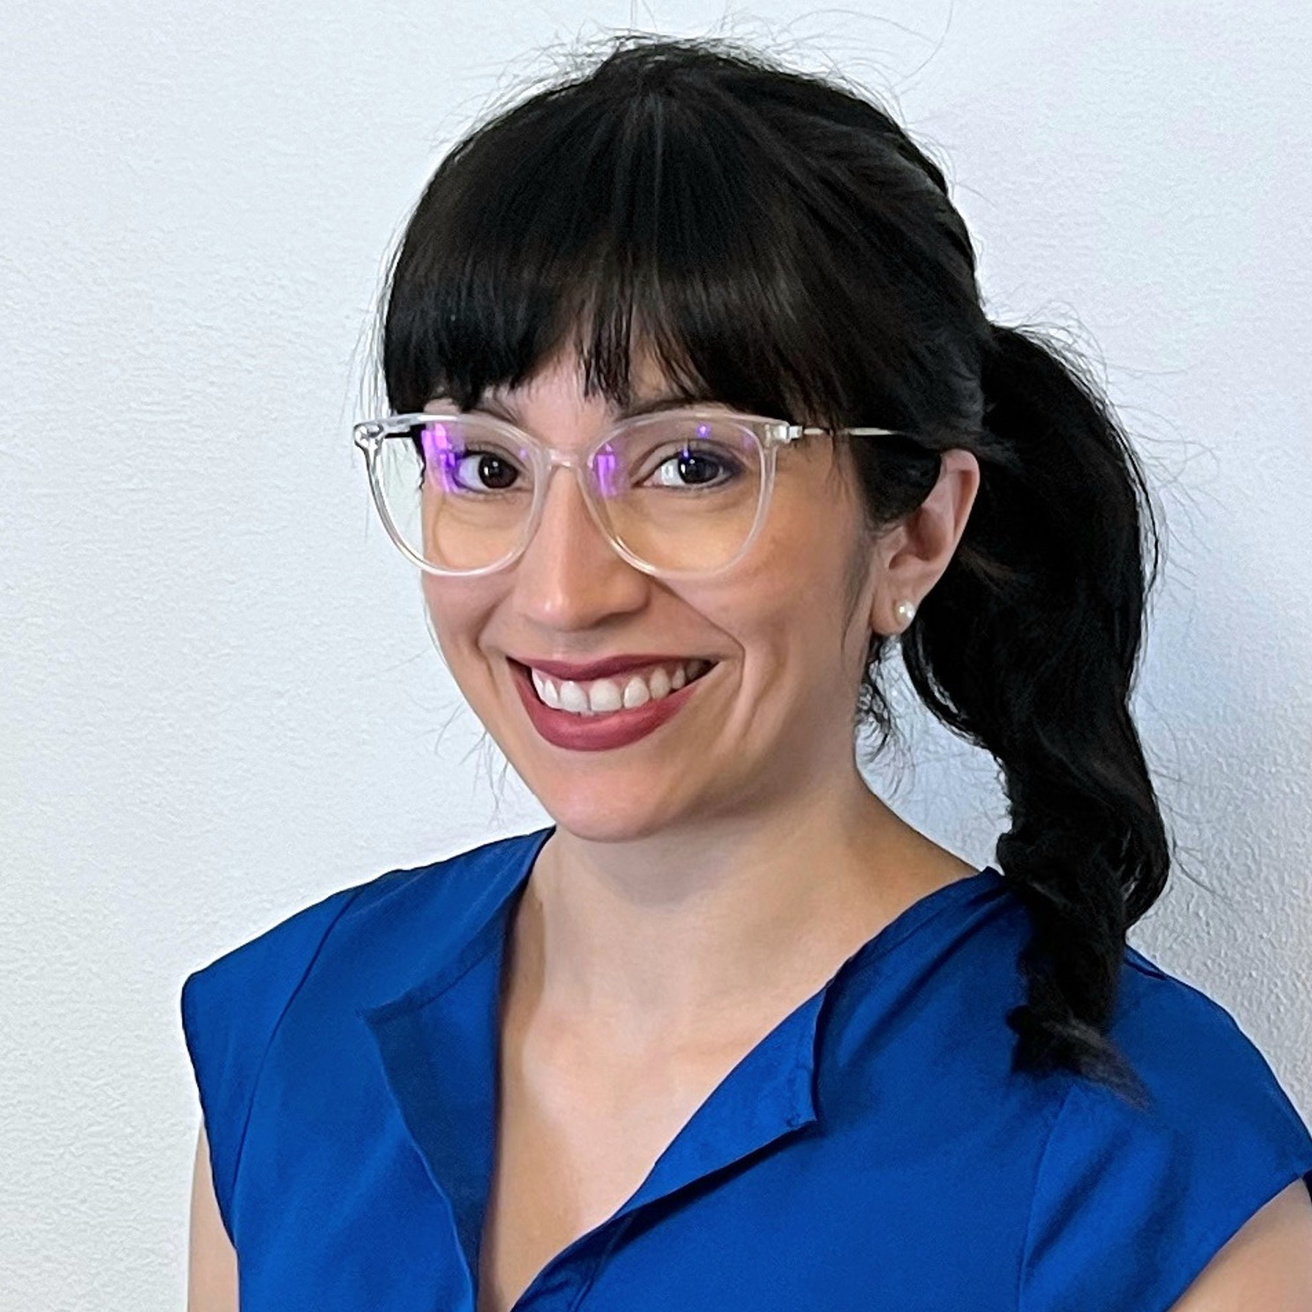 Sheila Gonzalez